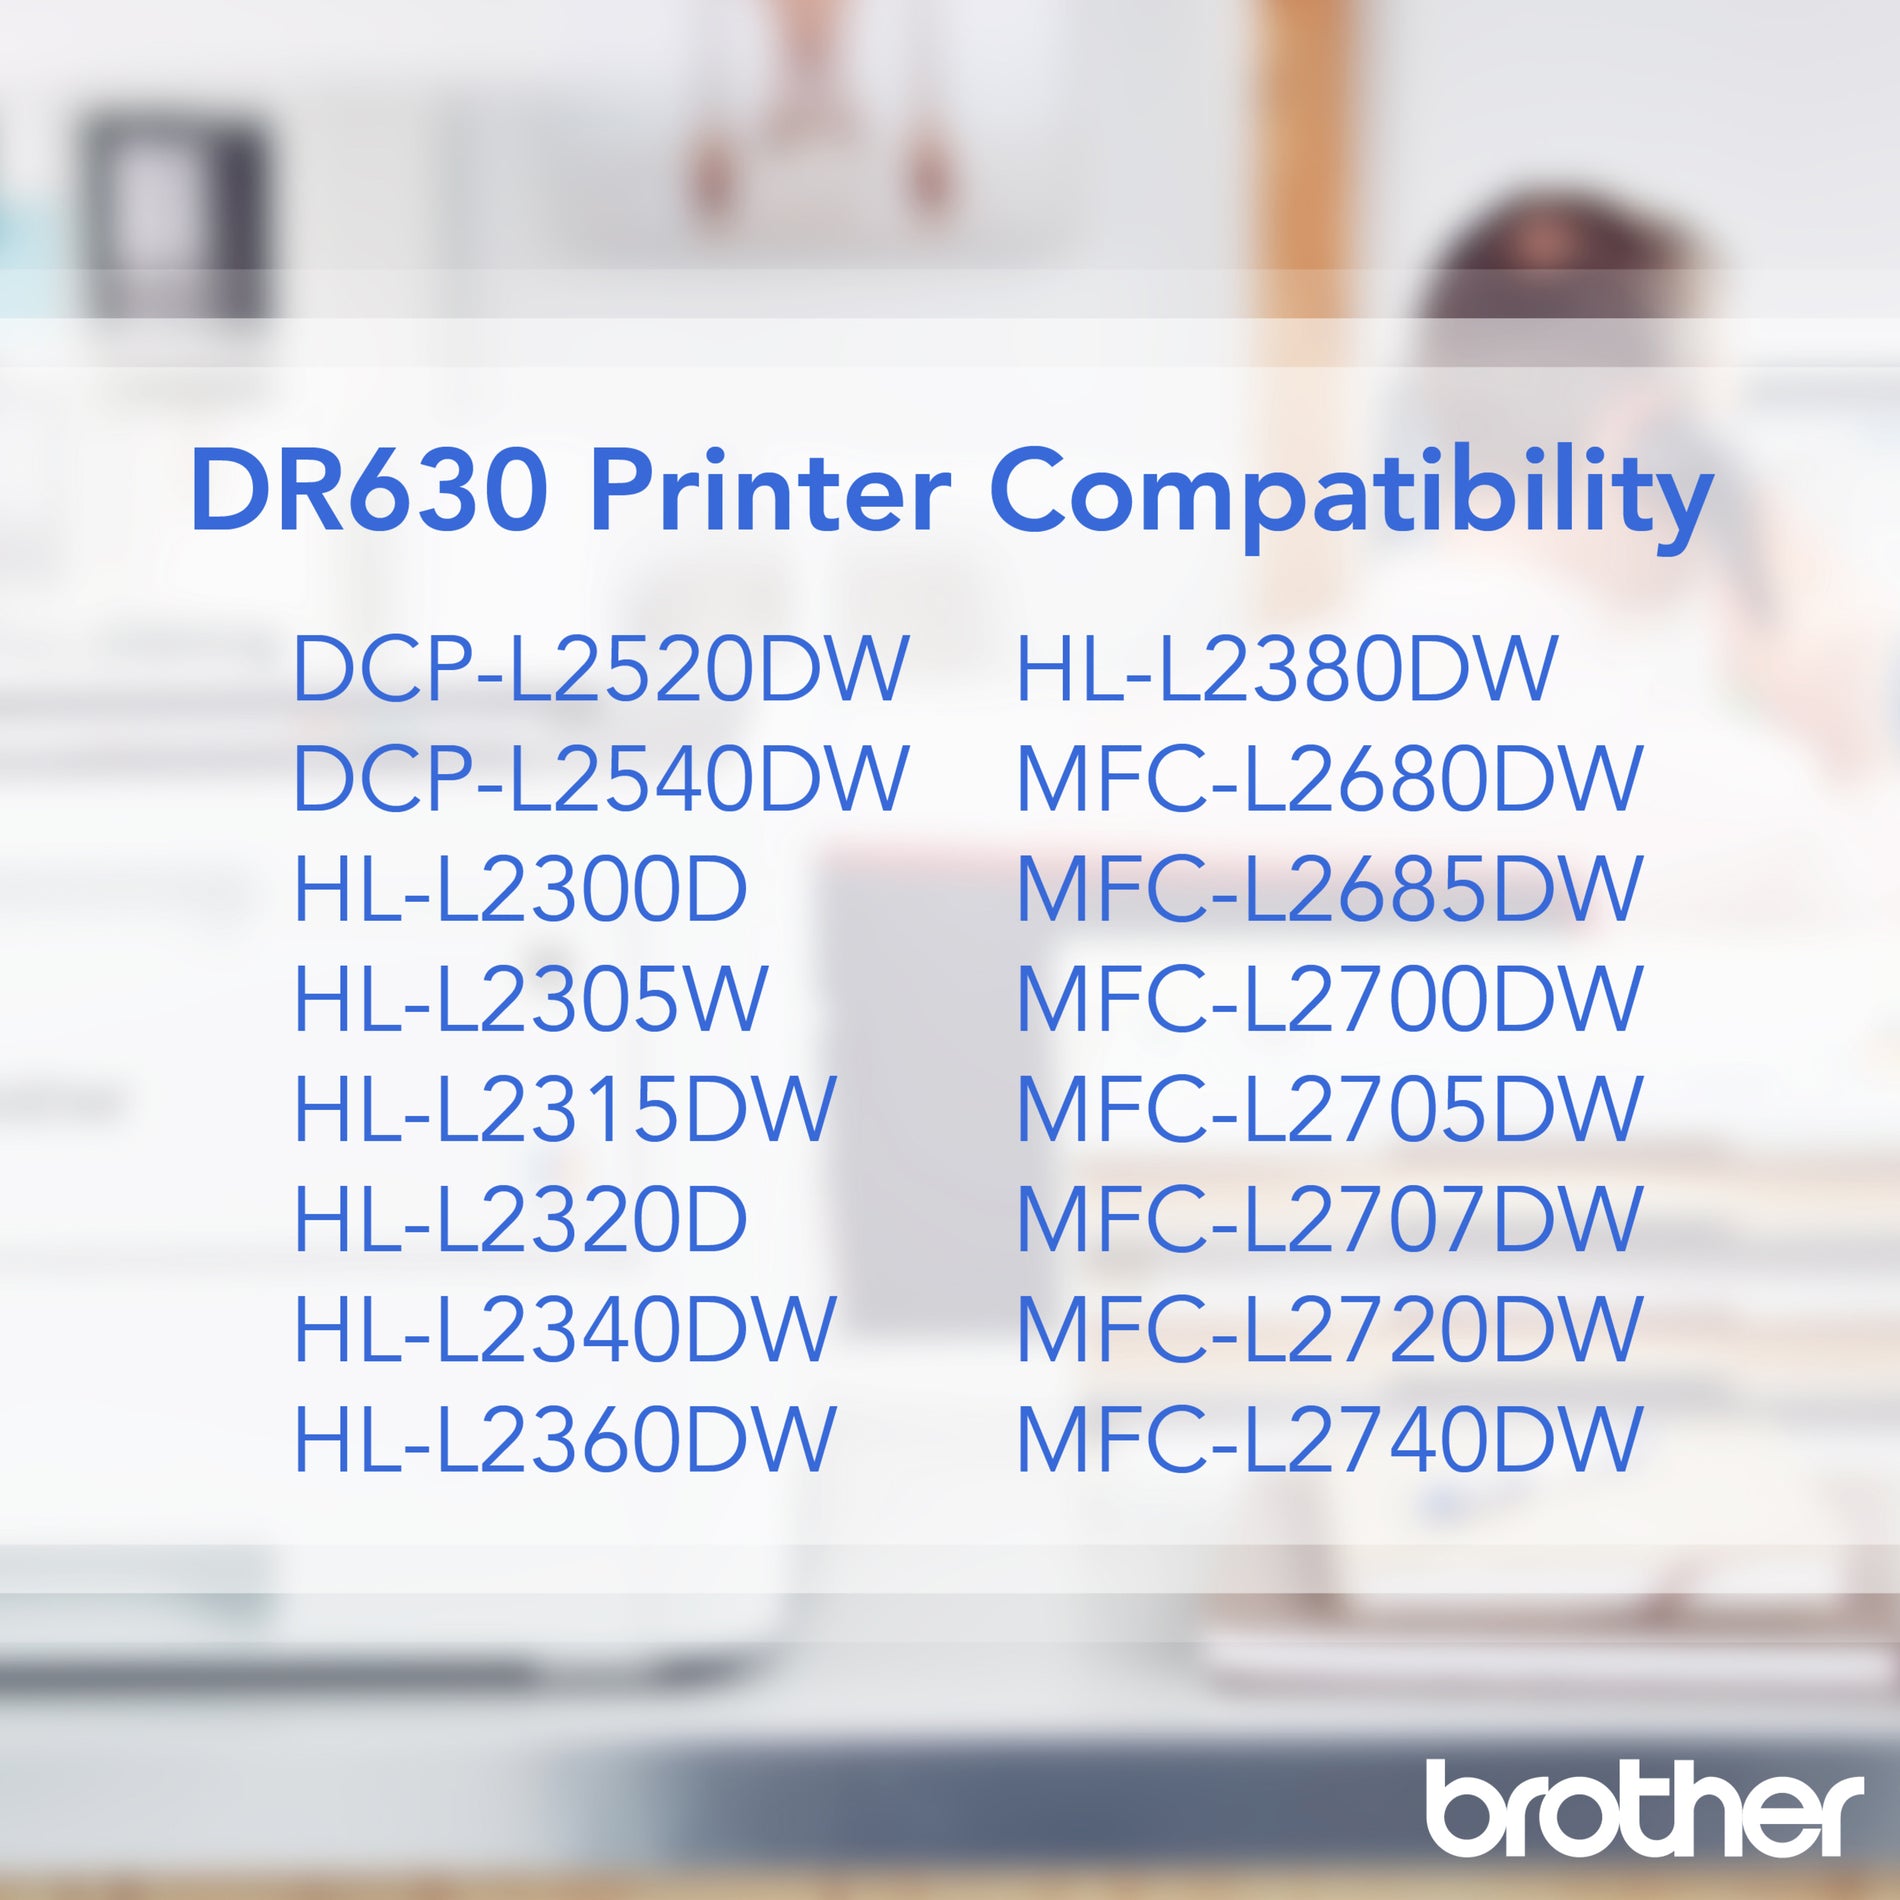 兄弟 DR630 鼓装置，12000 页产量，黑色 - 适用于 HL-L2360DW 打印机的正品兄弟鼓 品牌名称：兄弟  兄弟 DR630 鼓装置，12000 页产量，黑色 - 适用于 HL-L2360DW 打印机的正品兄弟鼓  品牌名称：兄弟